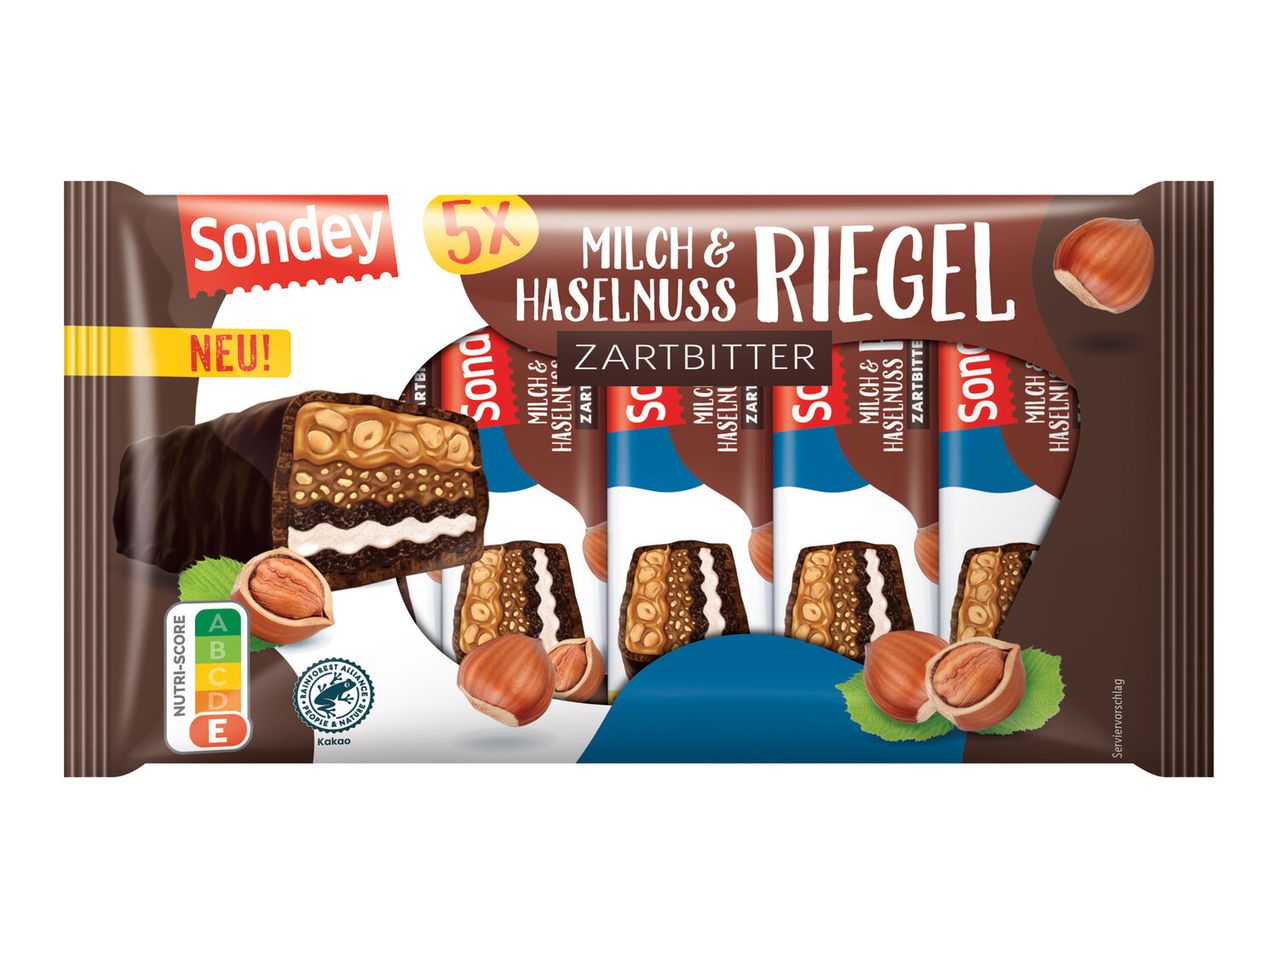 Sondey Milch & Zartbitter Haselnuss Riegel